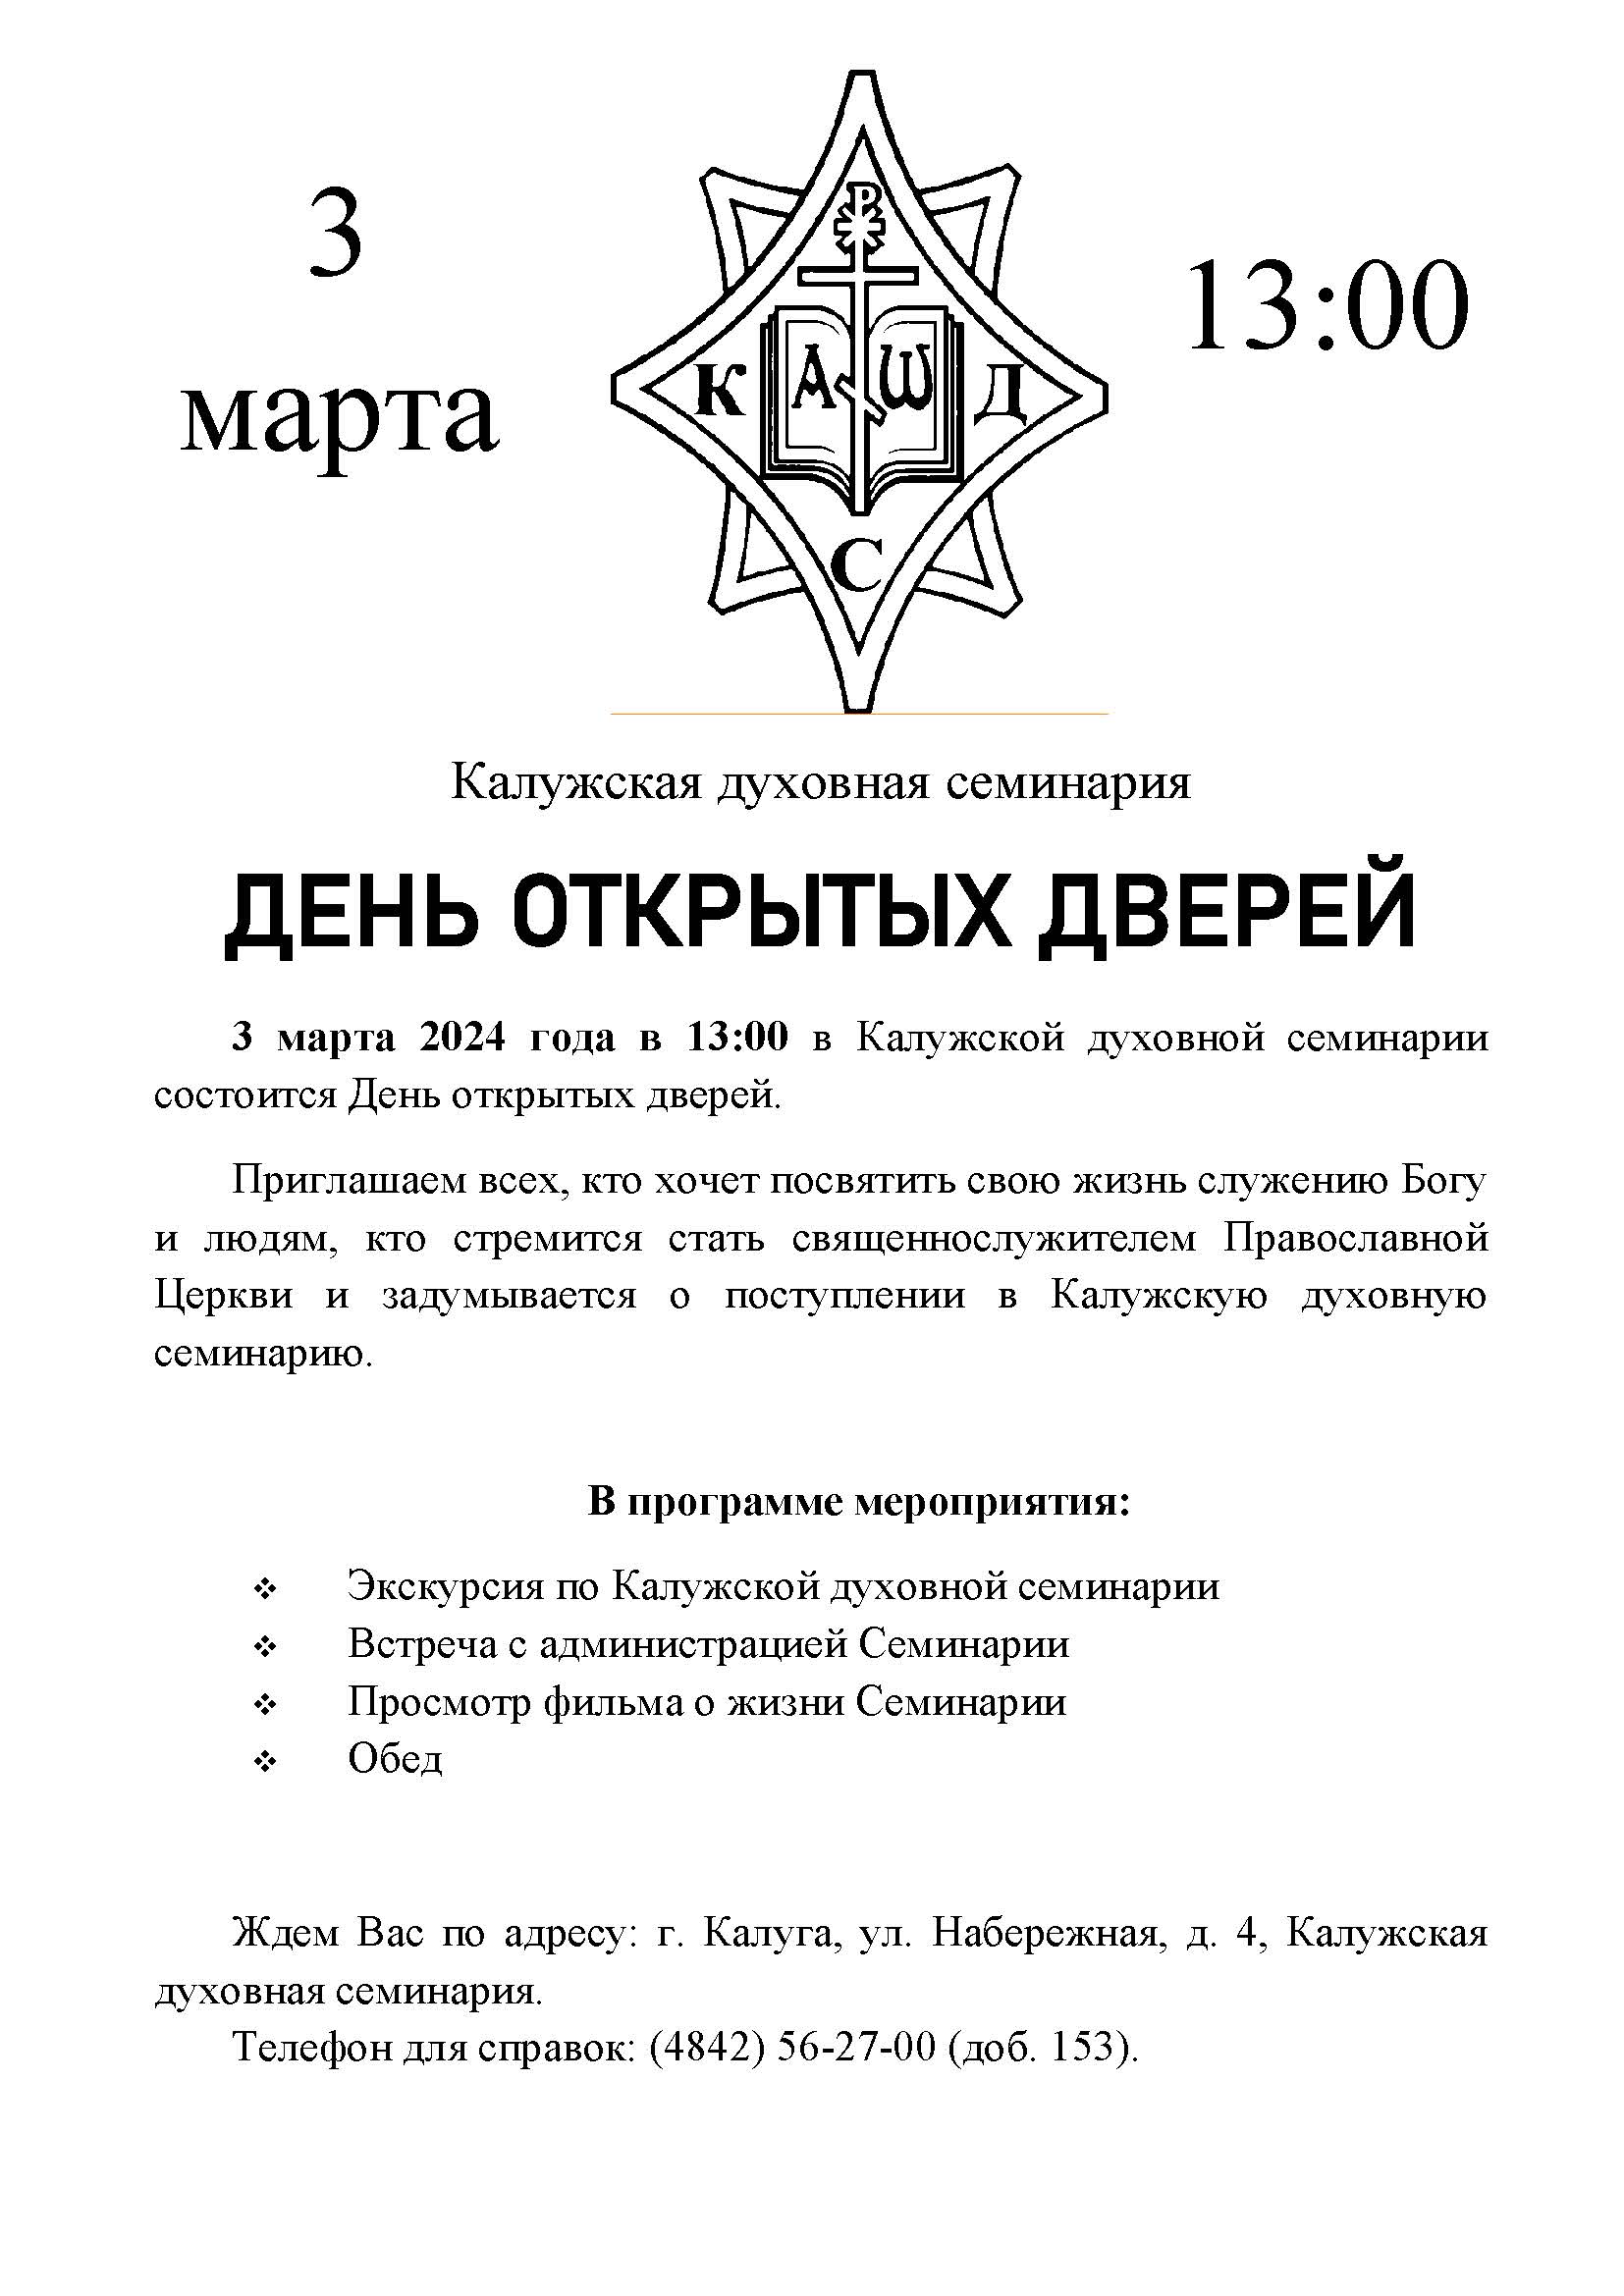 3 марта 2024 года в 13:00 в Калужской духовной семинарии состоится День открытых дверей